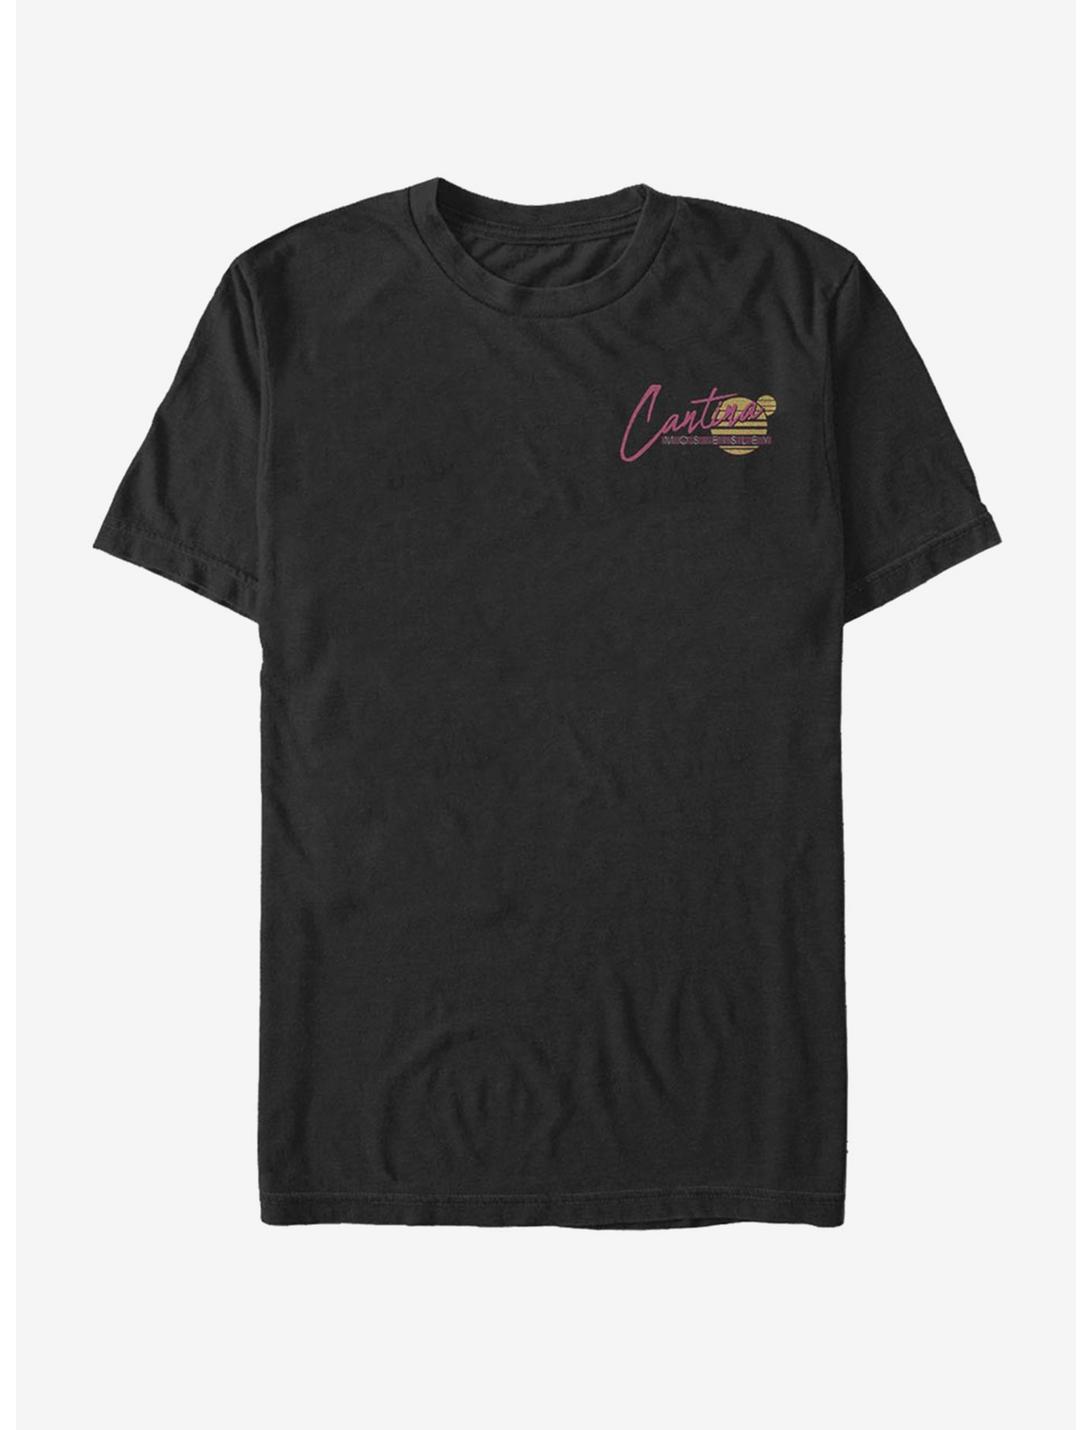 Star Wars Cantina Miami Text T-Shirt, BLACK, hi-res